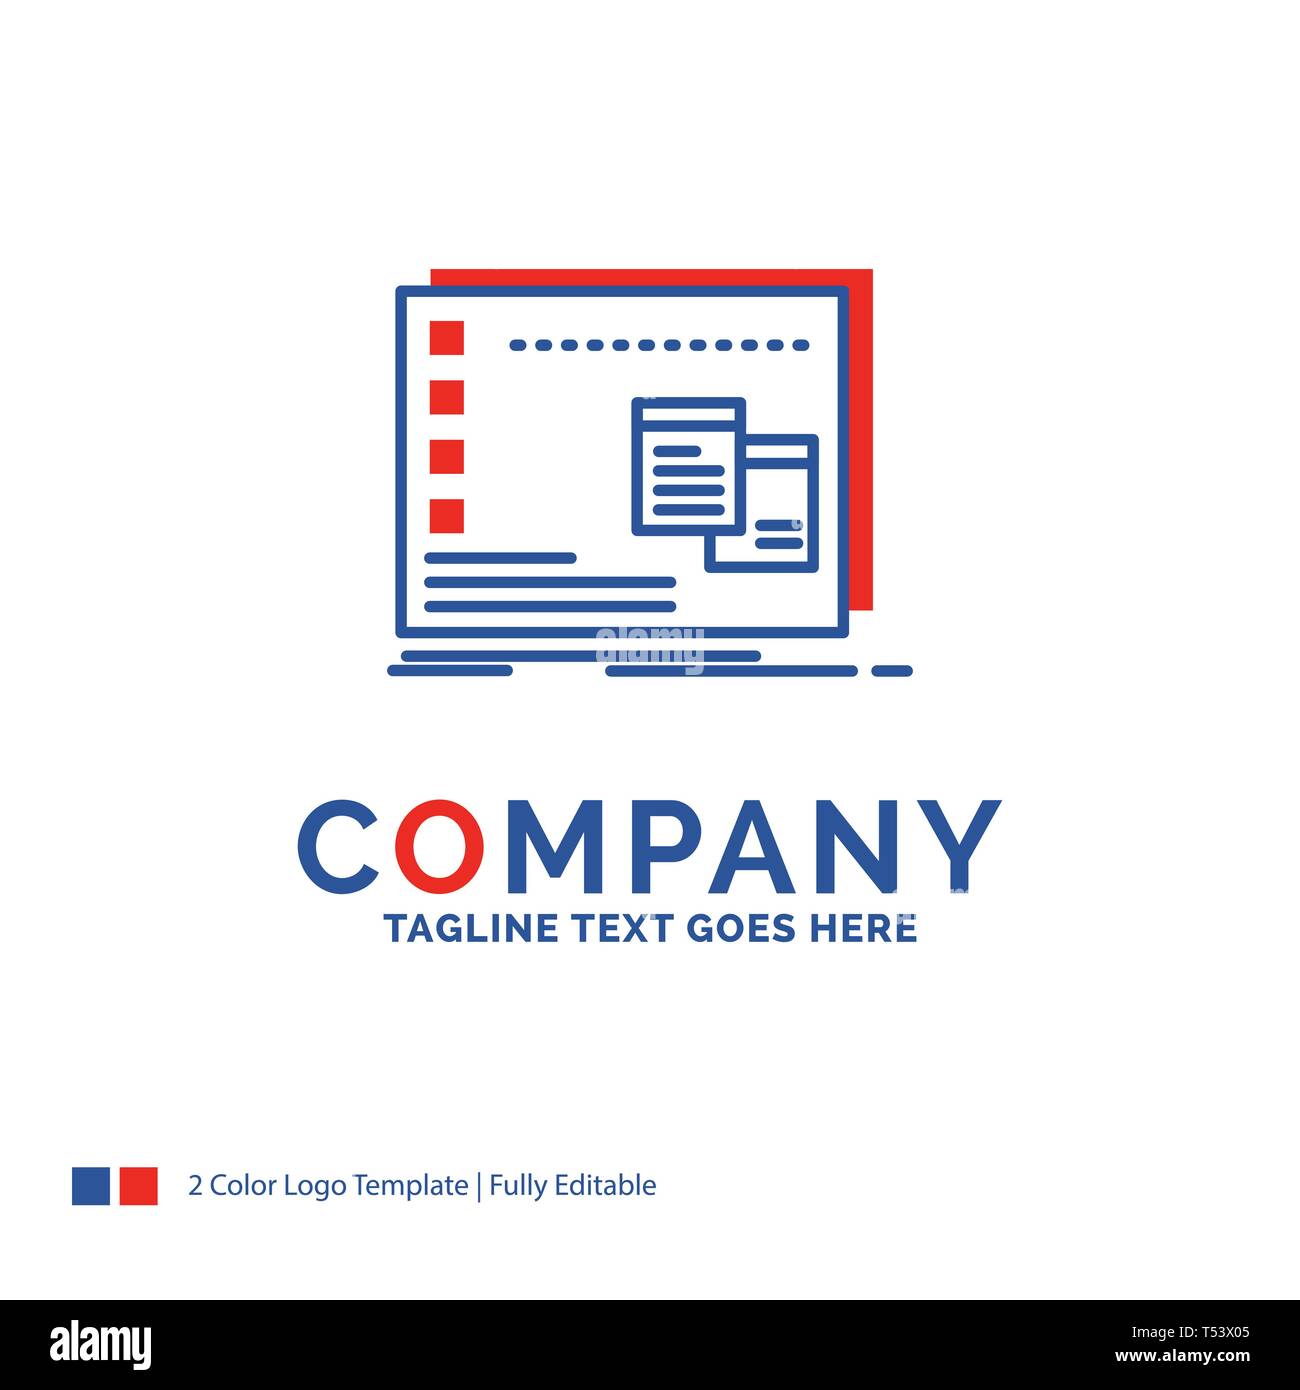 Nome azienda Logo Design per la finestra, Mac, operativi os, programma. Blu  e rosso il marchio Design con posto per slogan. Abstract Logo creativo temp  Immagine e Vettoriale - Alamy